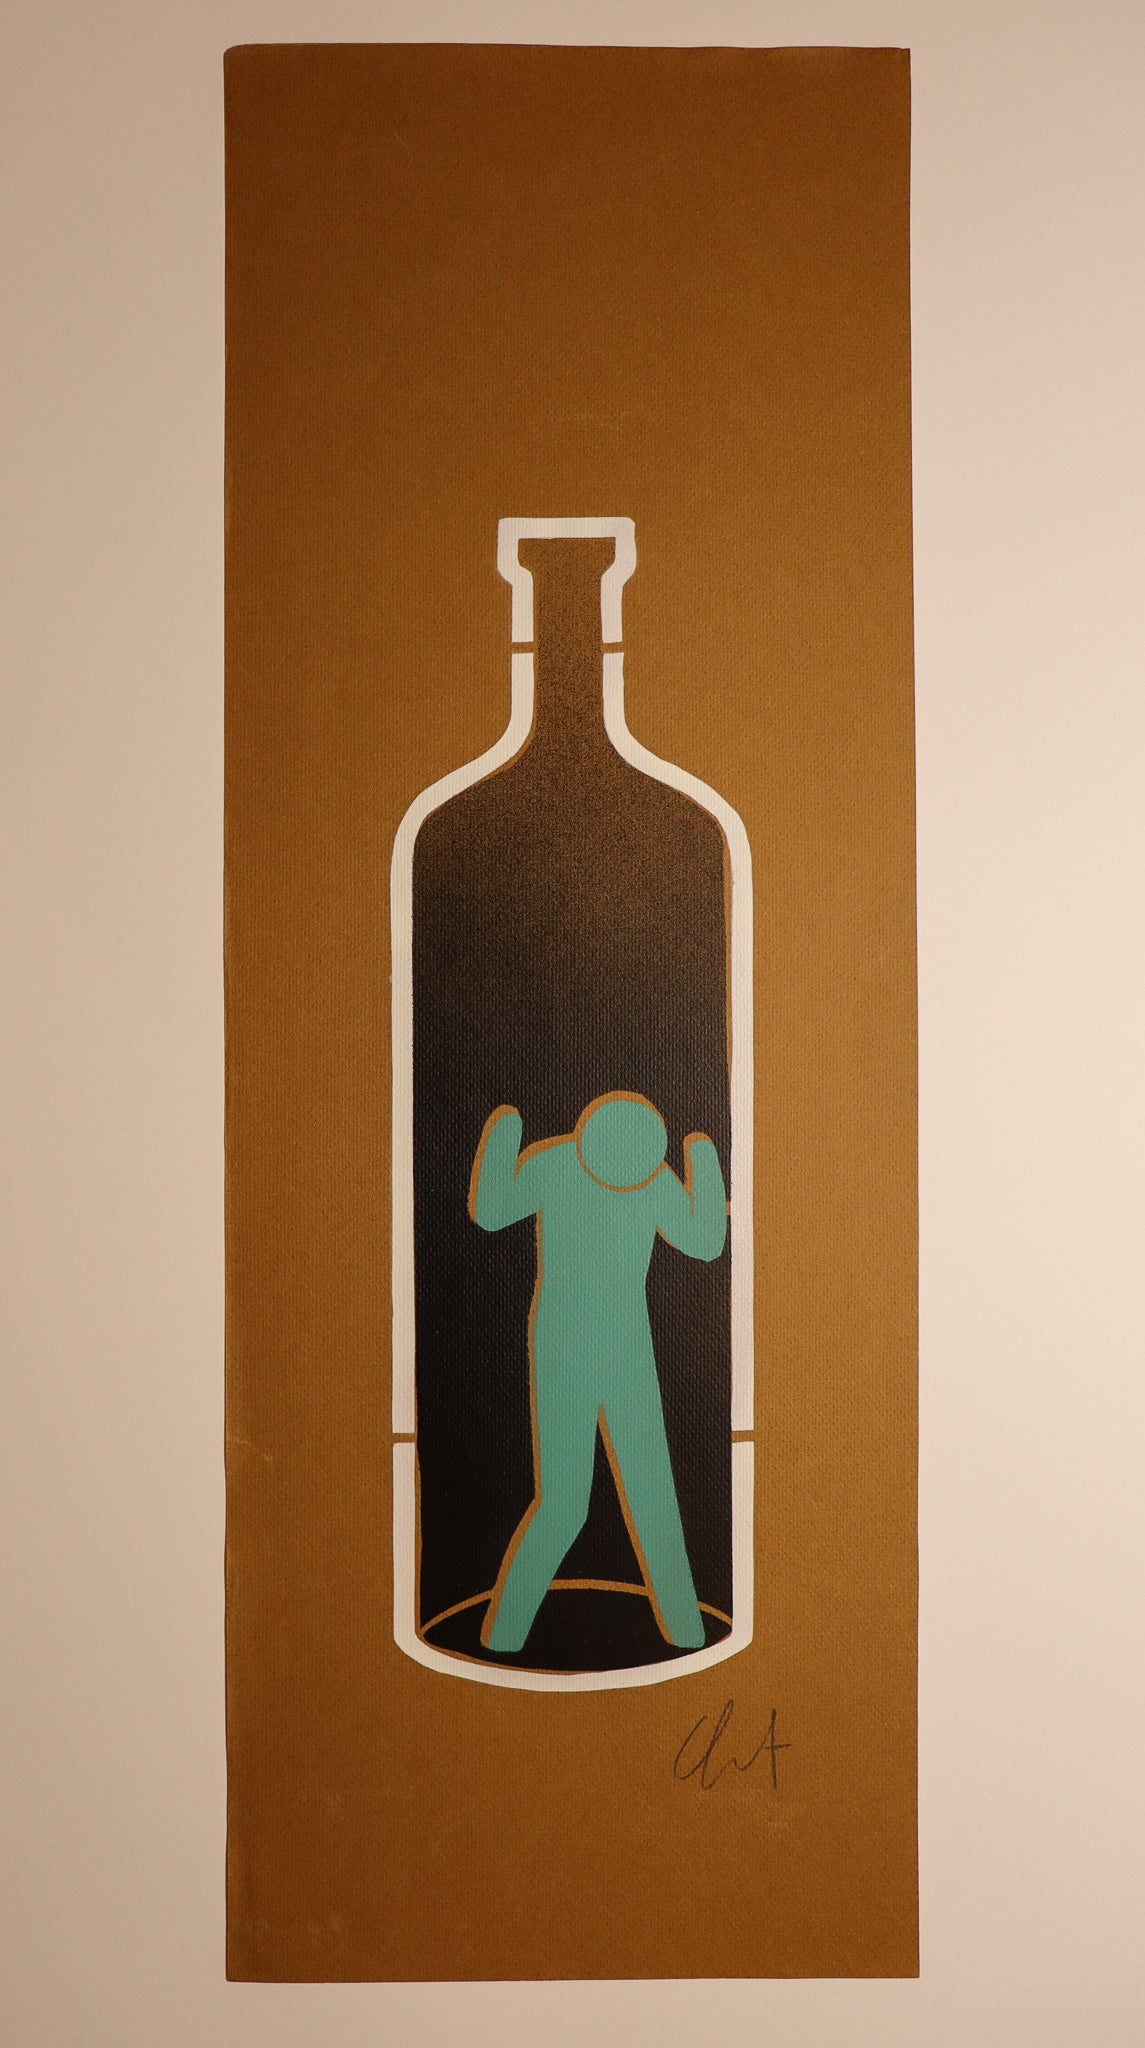 Bottiglia - Stencil